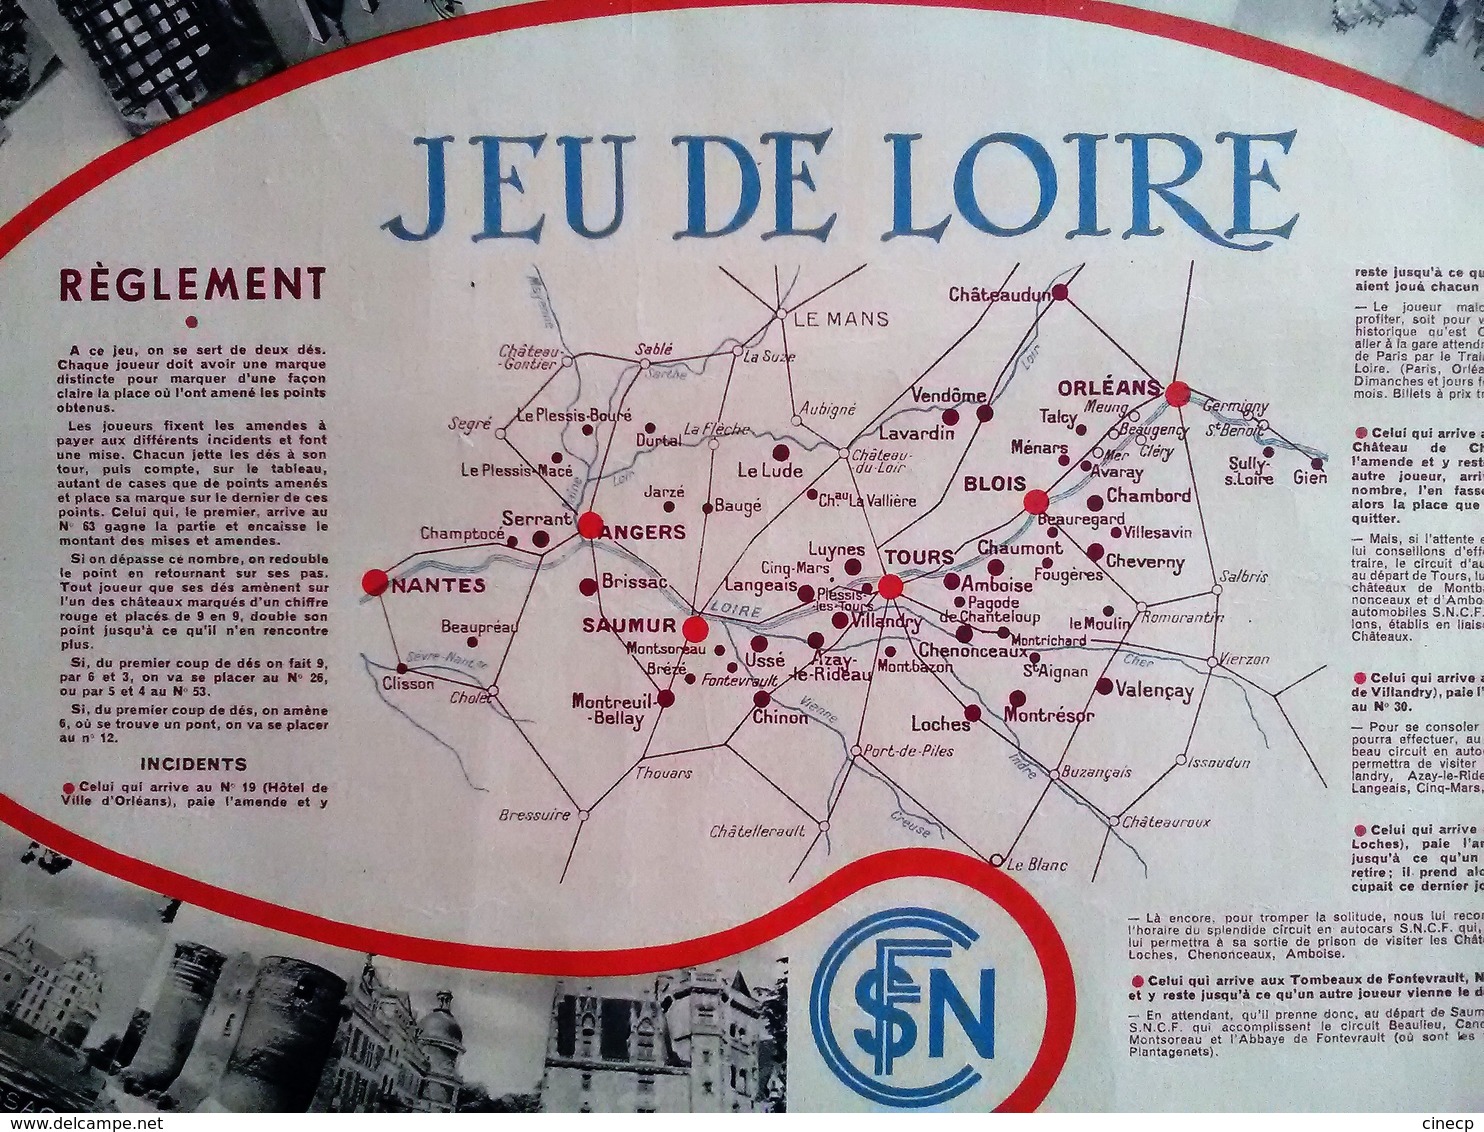 JEU DE PLATEAU PUBLICITE SNCF JEU DE LOIRE Illustration BELLE AFFICHE ANCIENNE ORIGINALE JEU DE L' OIE - Railway